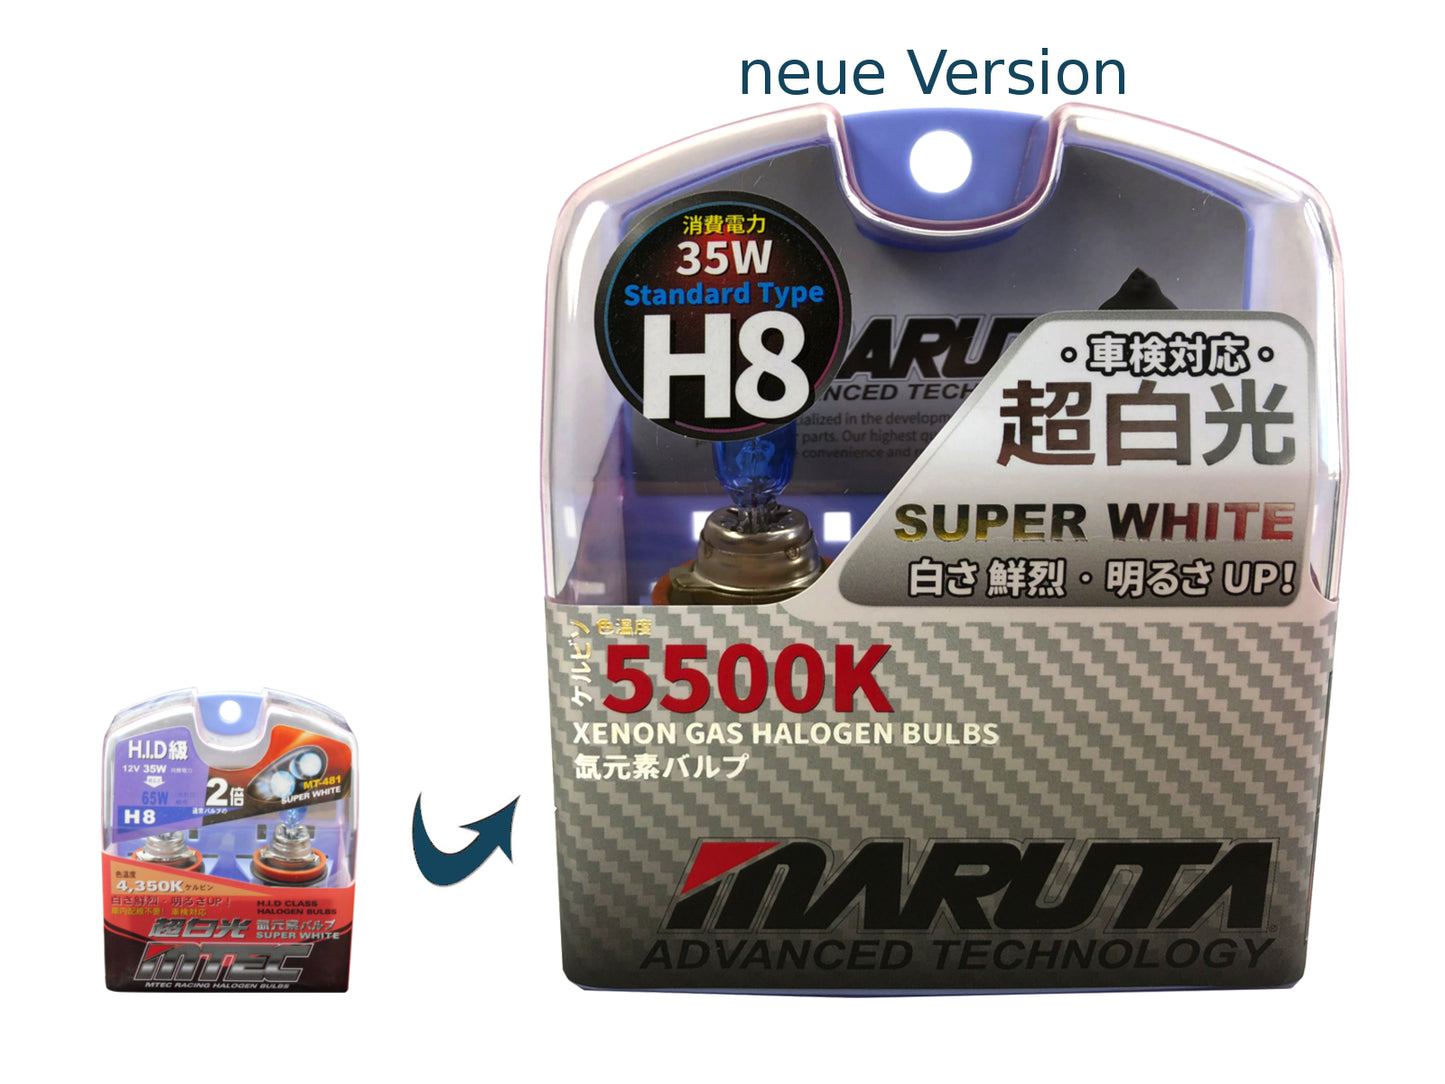 MARUTA SUPER WHITE H8 12V 35W lampe halogène pour phares, feux antibrouillard & feux diurnes, effet xénon 5500K, ampoule xénon-gaz longue durée avec verre quartz de haute qualité & homologation routière (marque ECE) - Bild 8